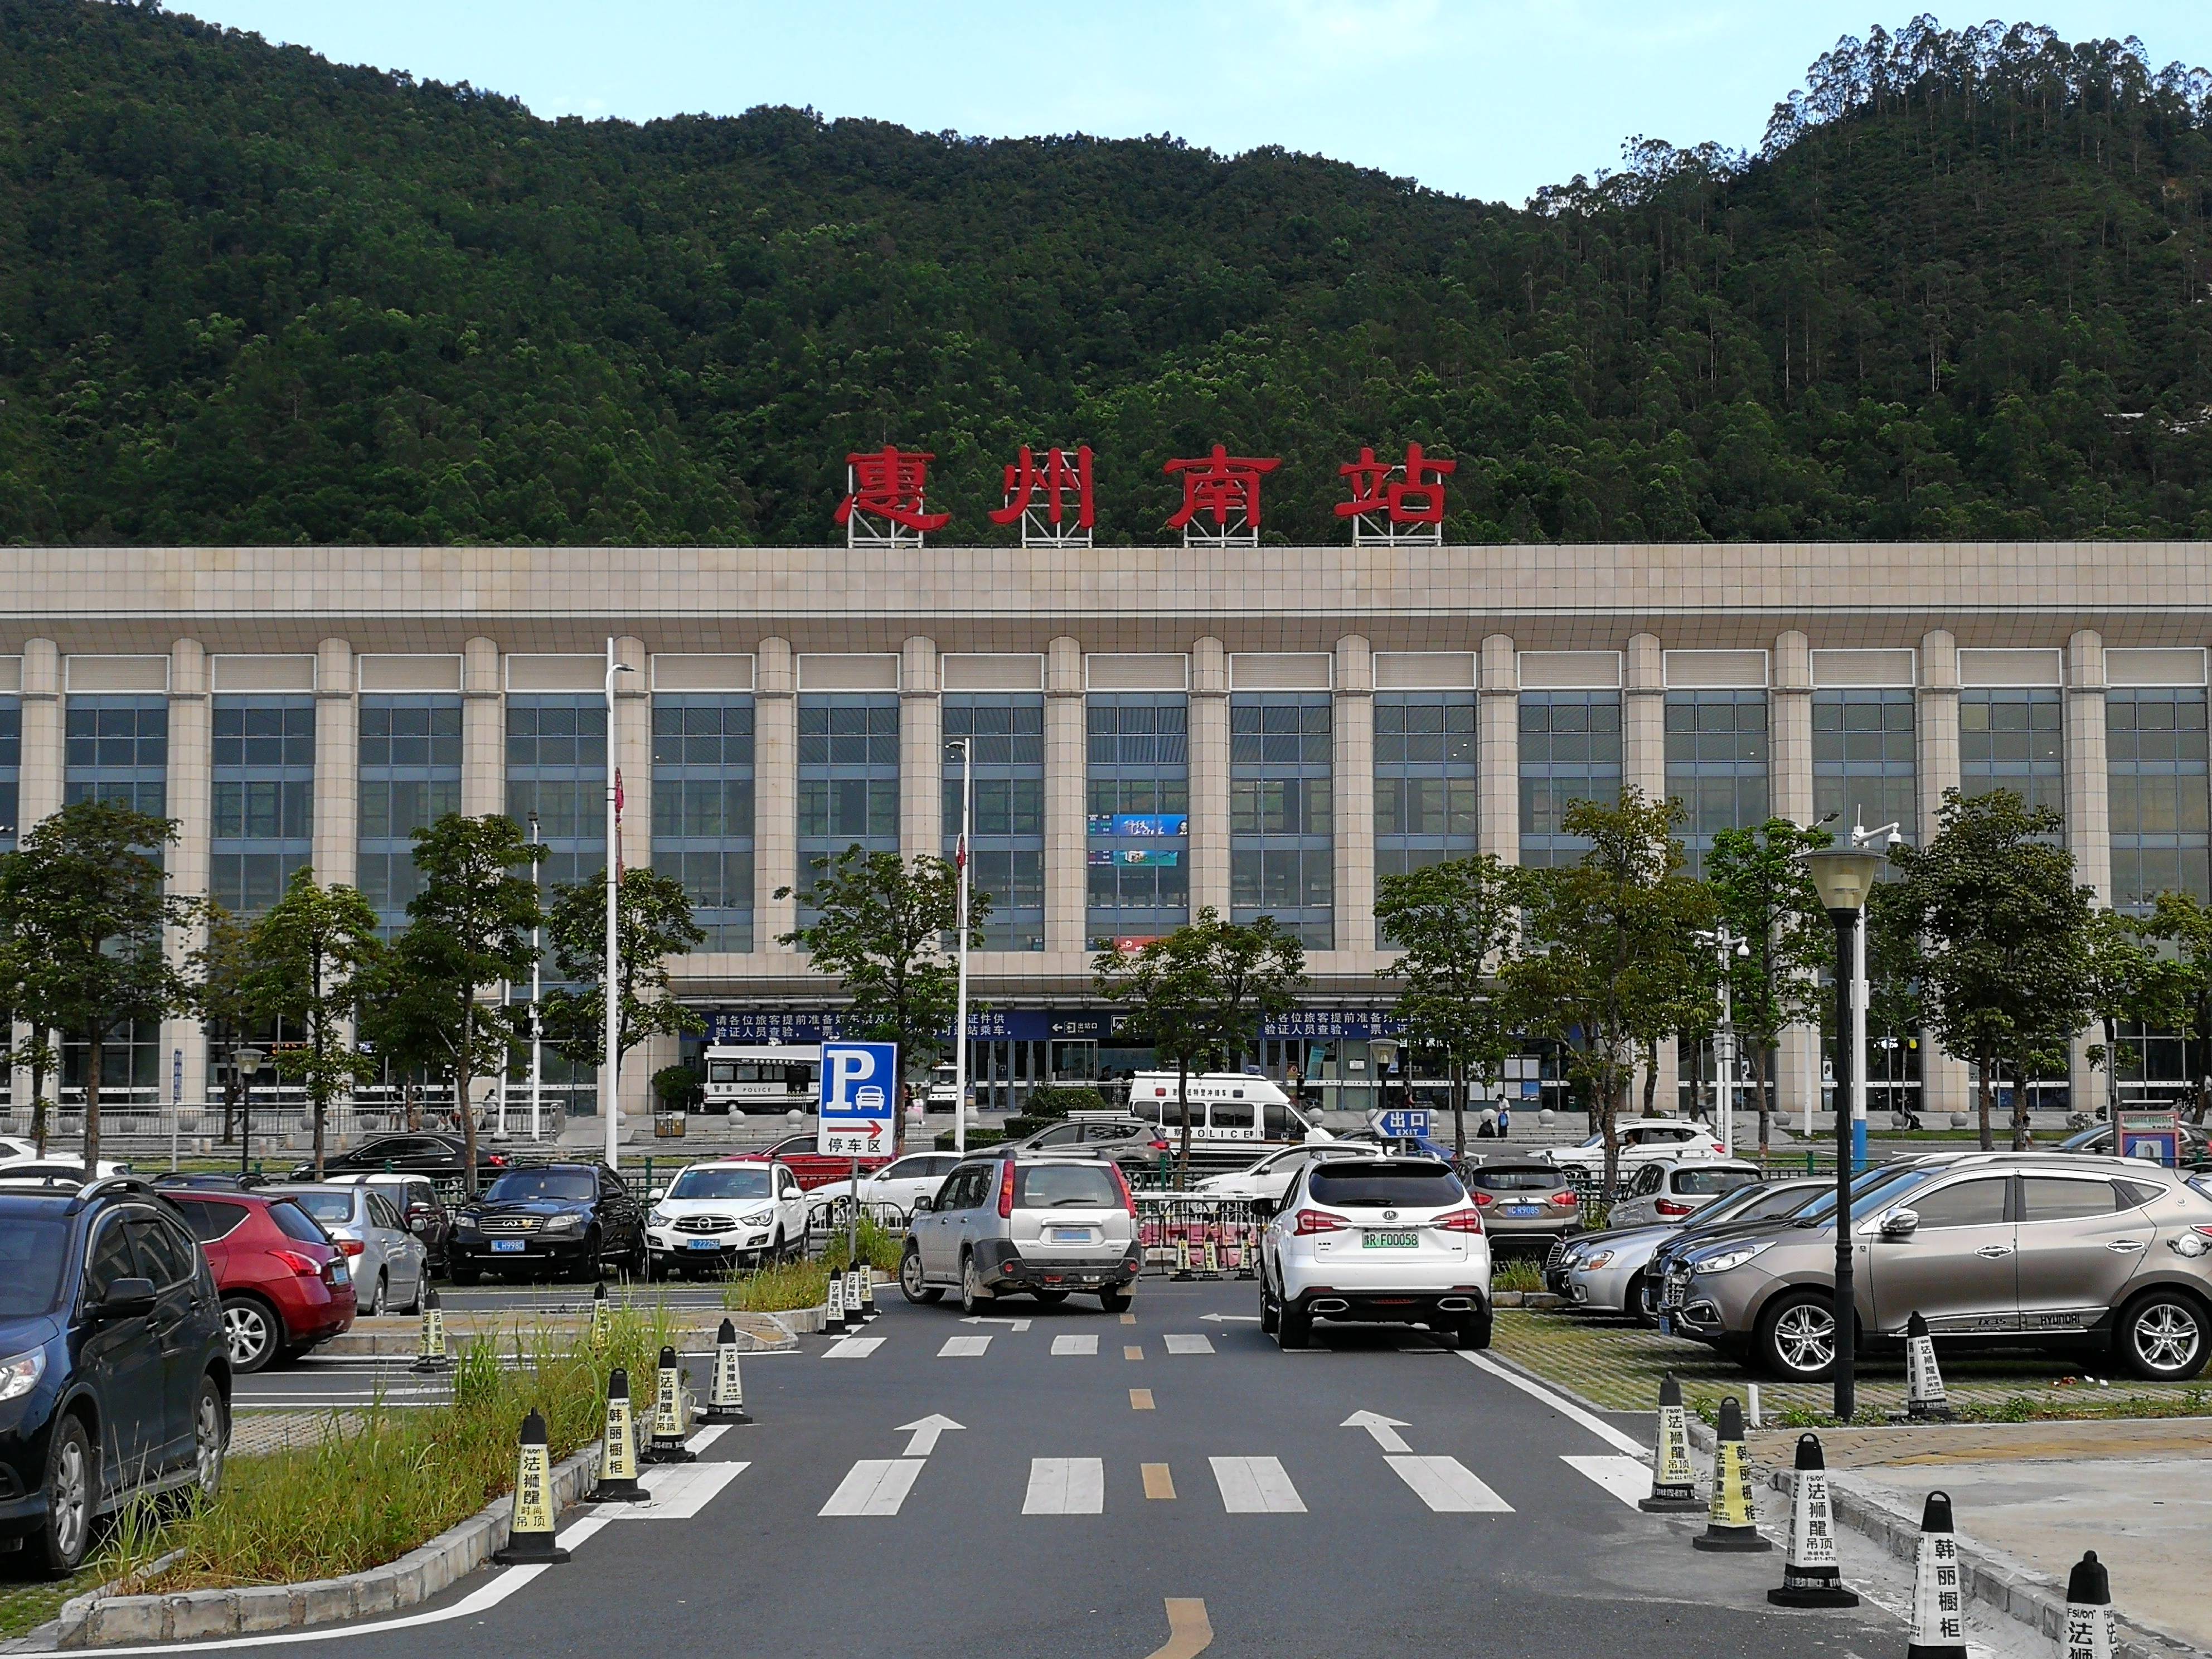 惠州南站照片高清图片